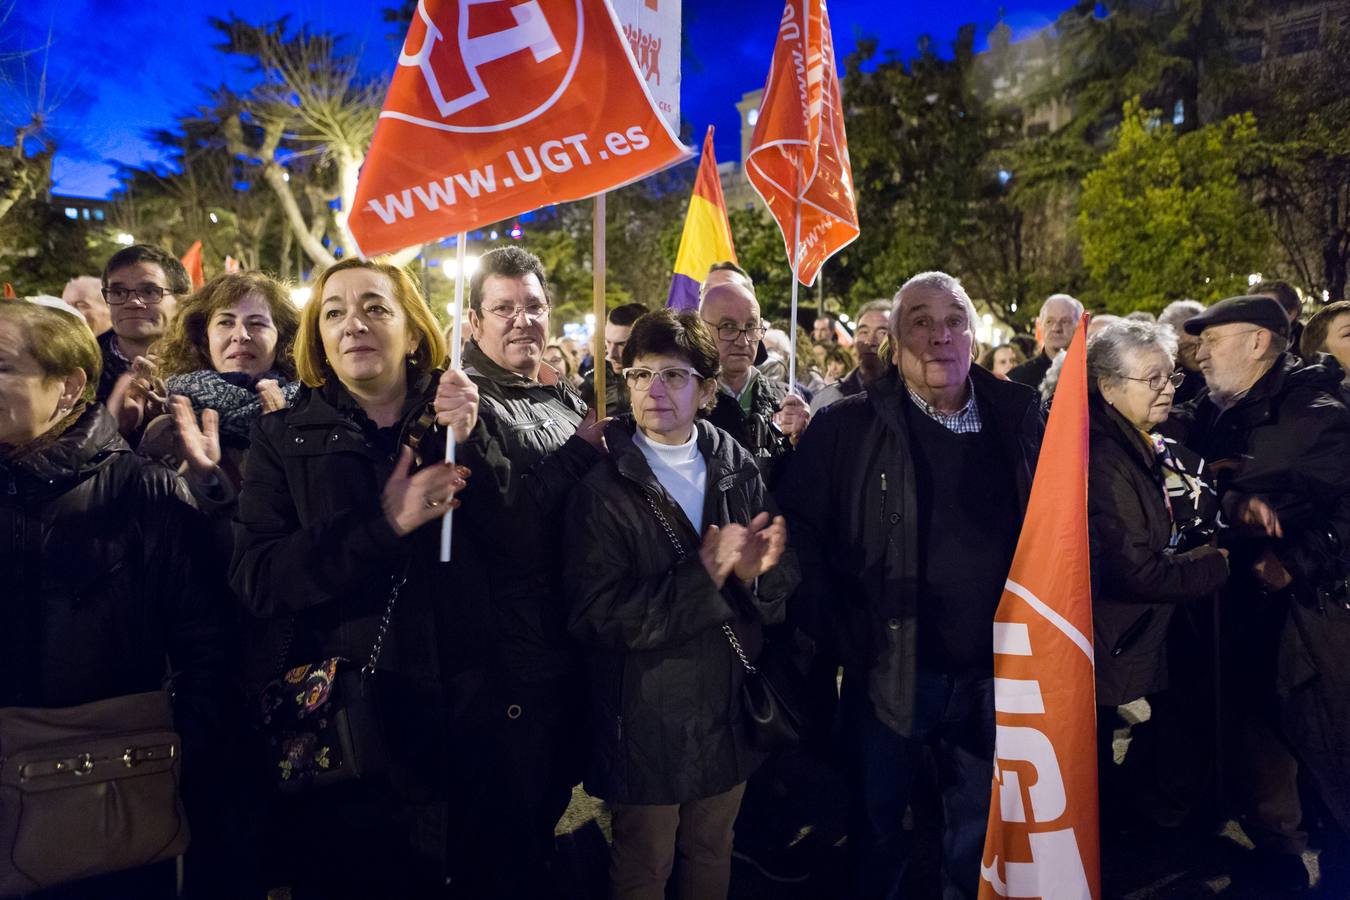 Fotos: Manifestación en Logroño por unas pensiones justas